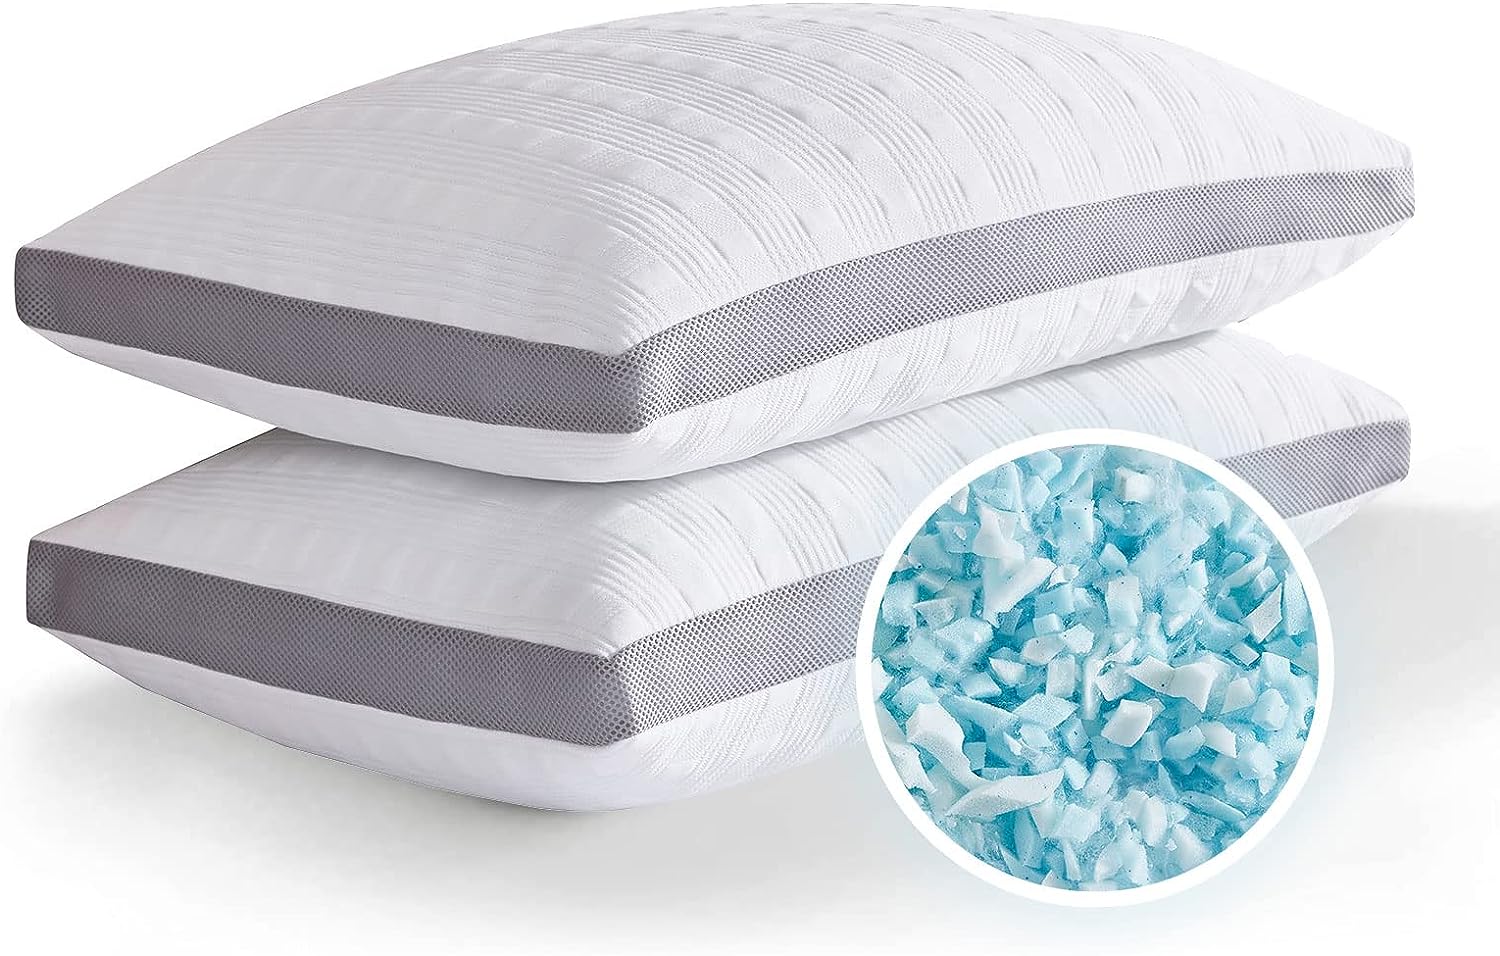 Shredded Memory Foam Bed Pillow, King